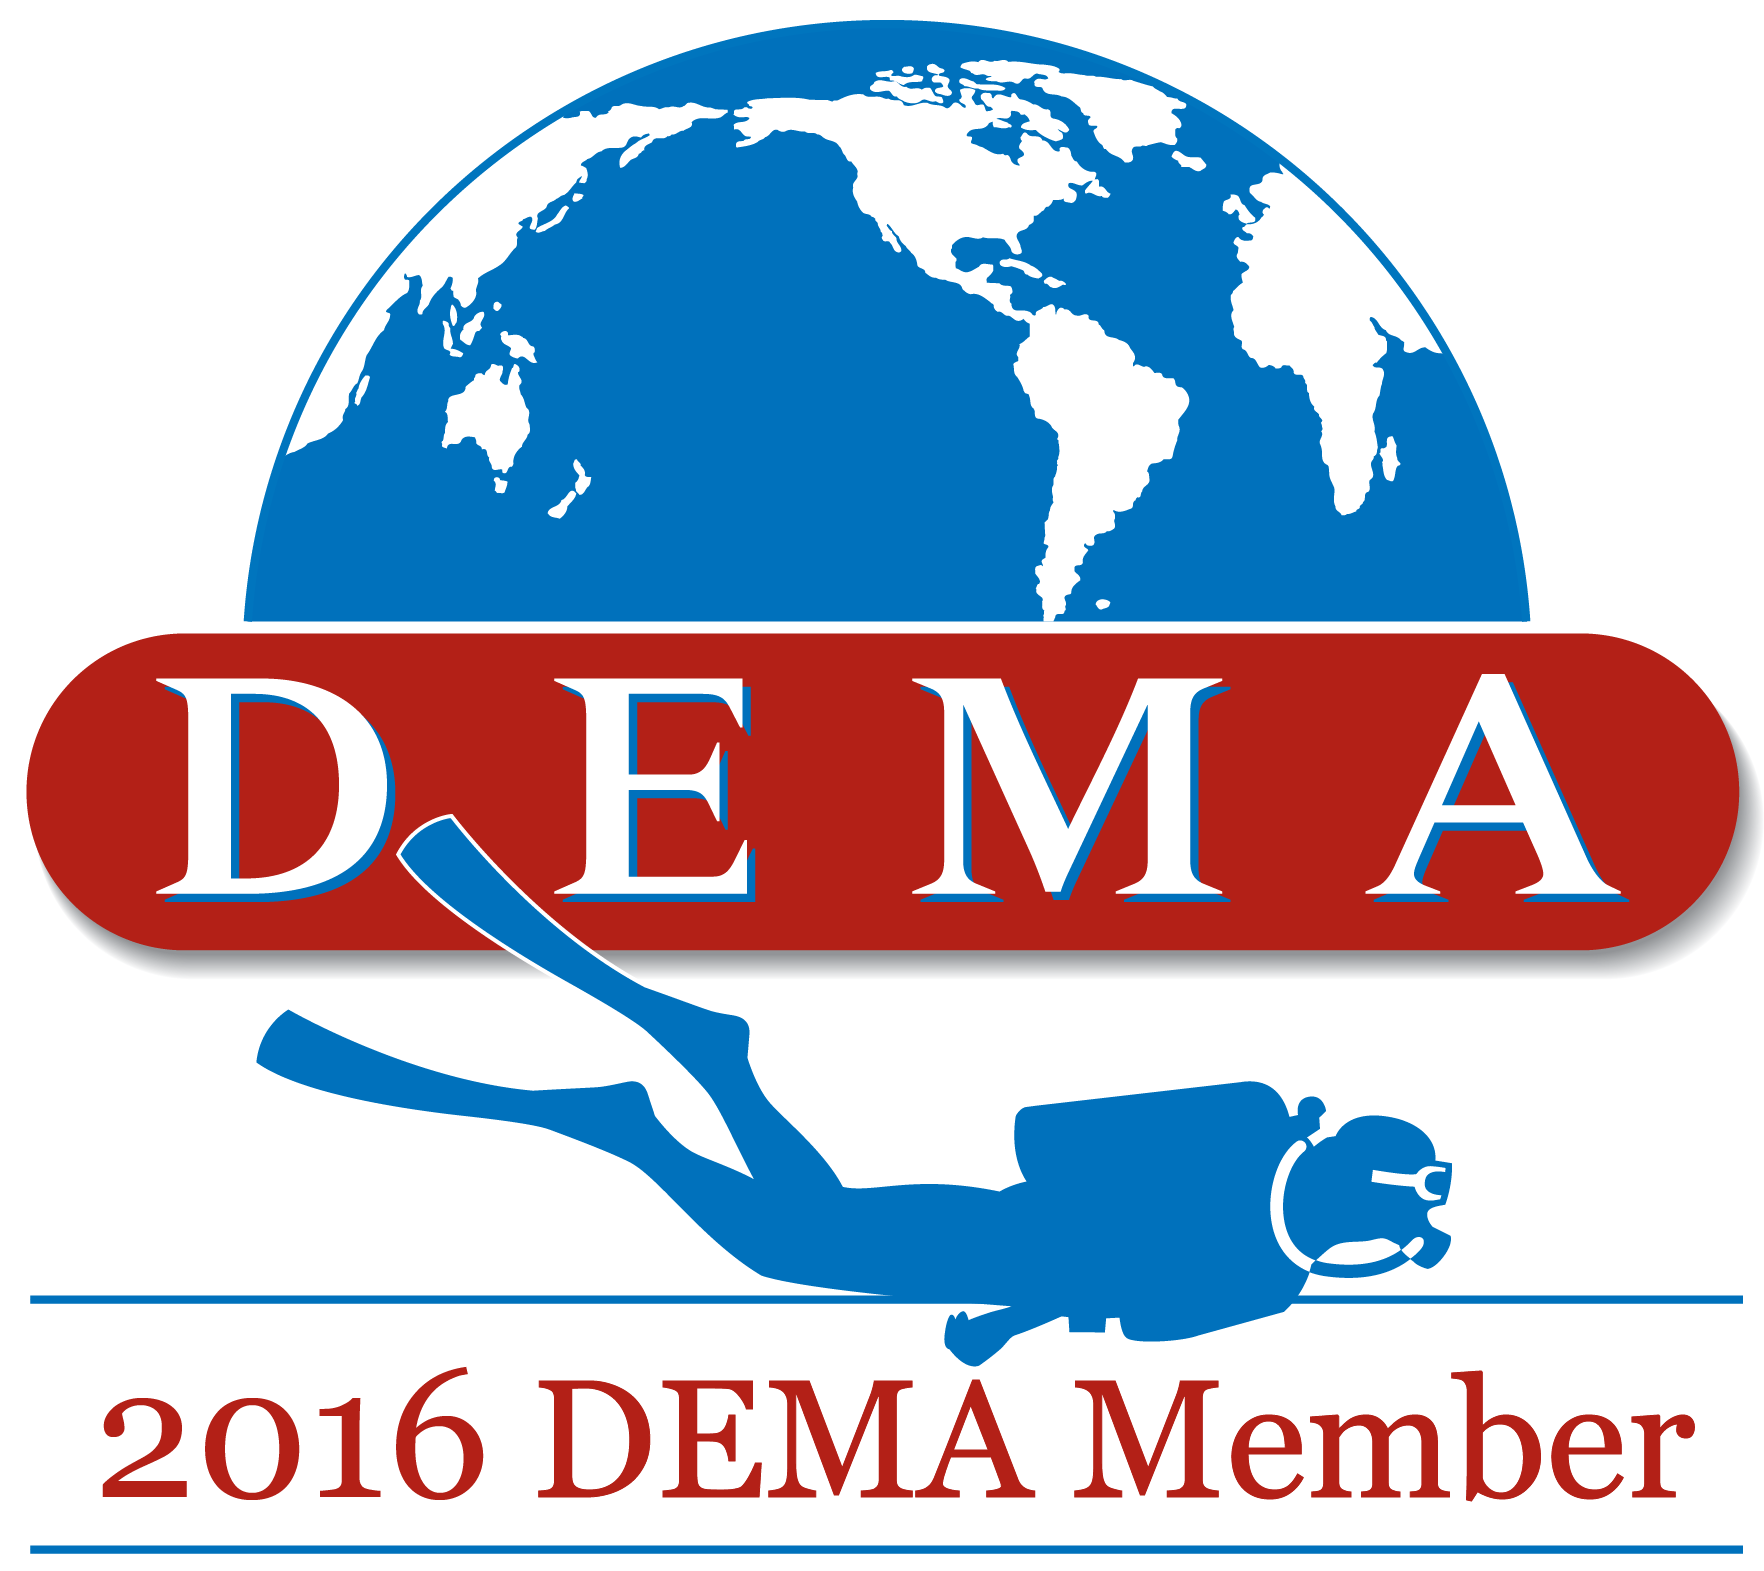 Current DEMA Member